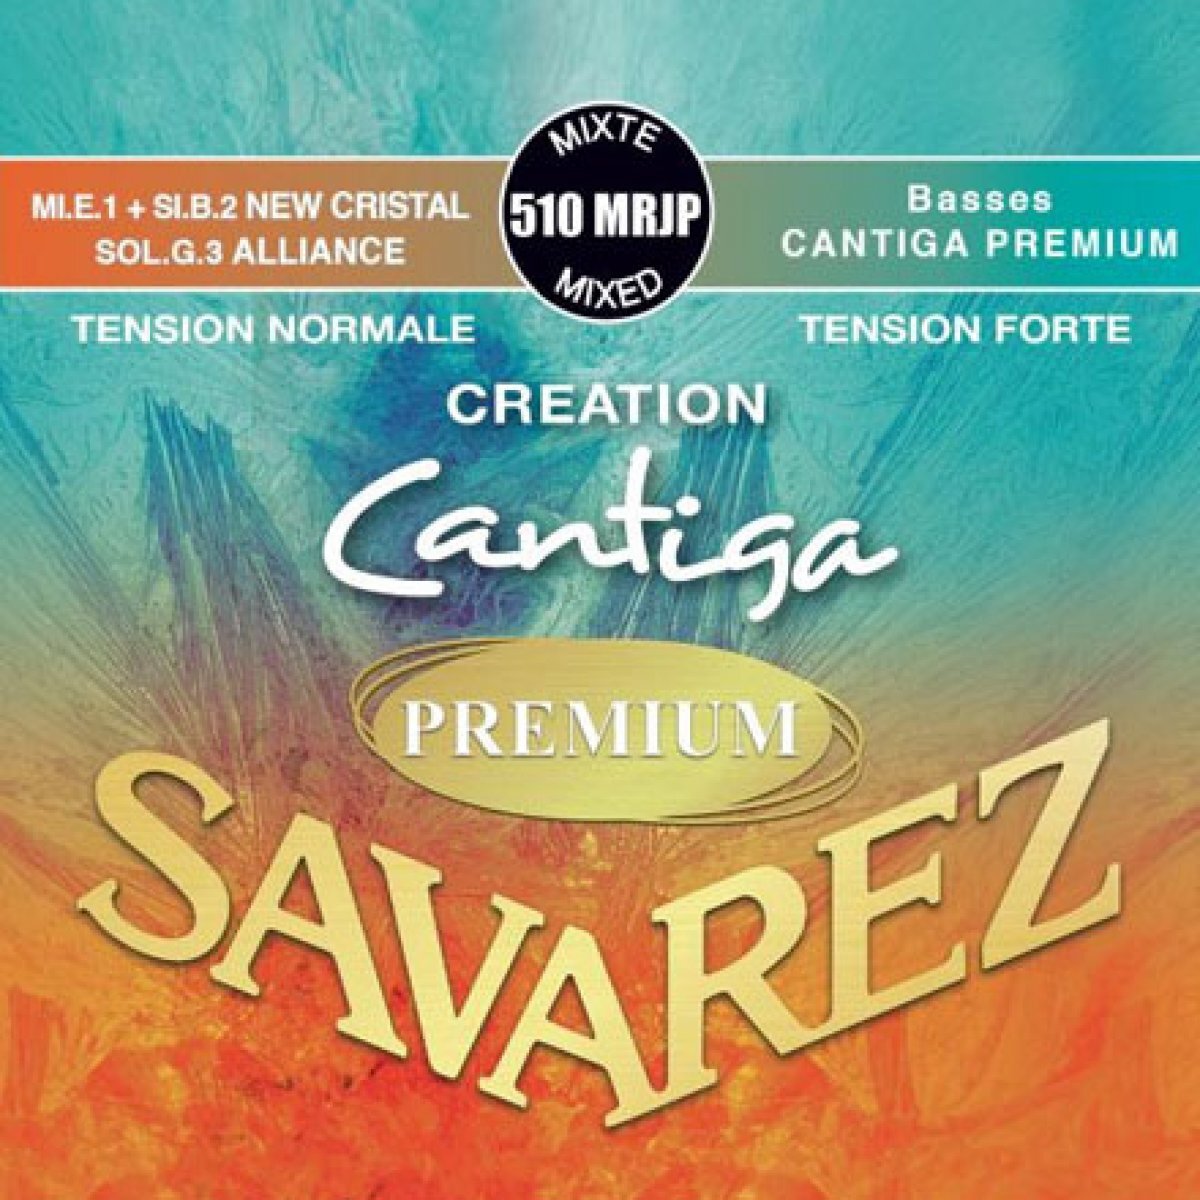 Savarez струны для классической гитары. Creation Cantiga Premium струны для классических гитар Savarez 510 Mrp. Струны Саварез премиум для классической гитары. Струны для классической гитары Savarez 510. Savarez Cantiga.